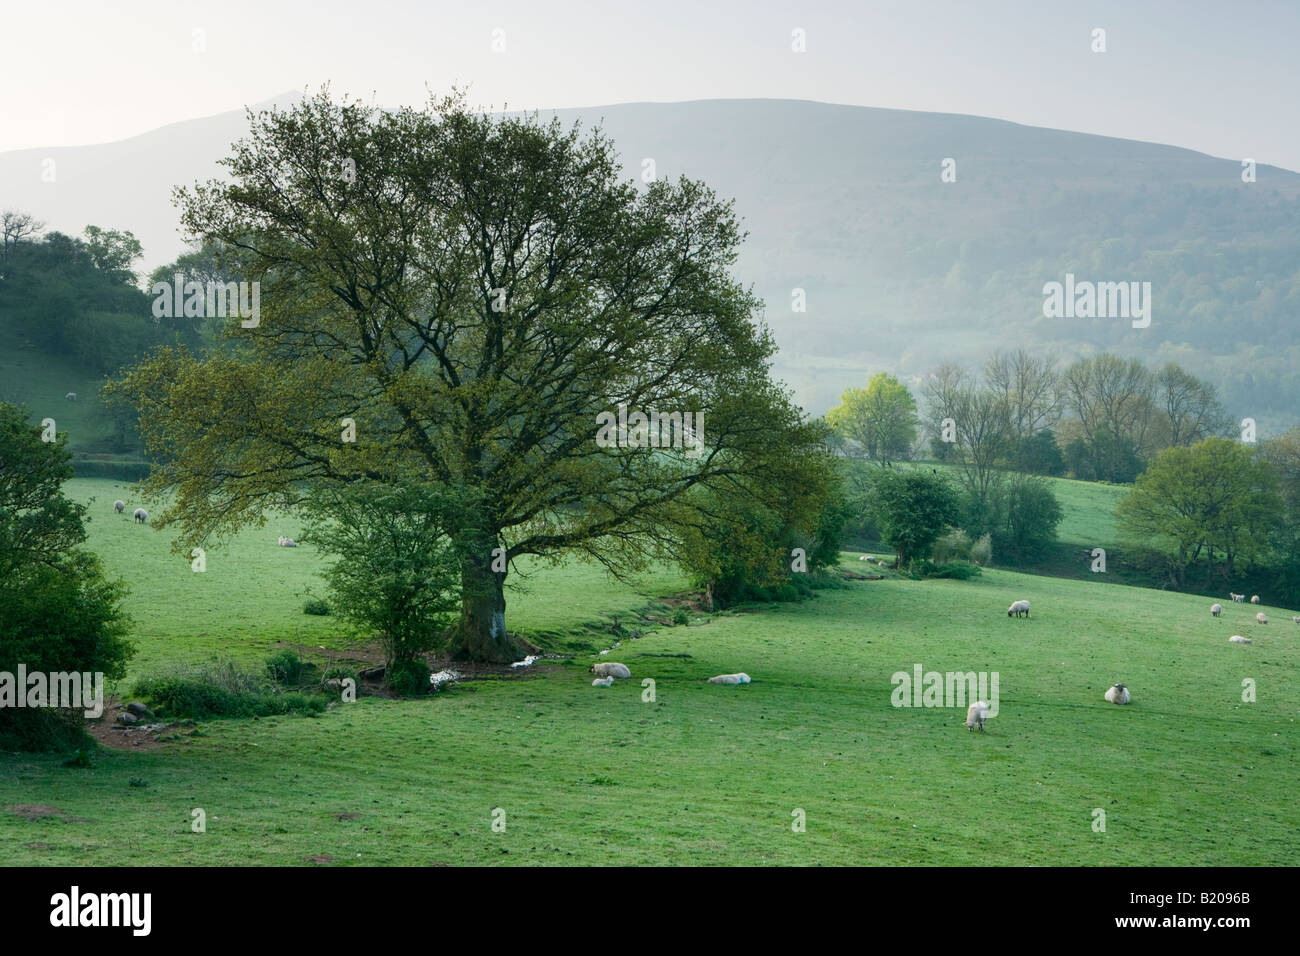 Les terres agricoles près de Crickhowell, Powys, Wales, UK. Misty dawn de printemps. Banque D'Images